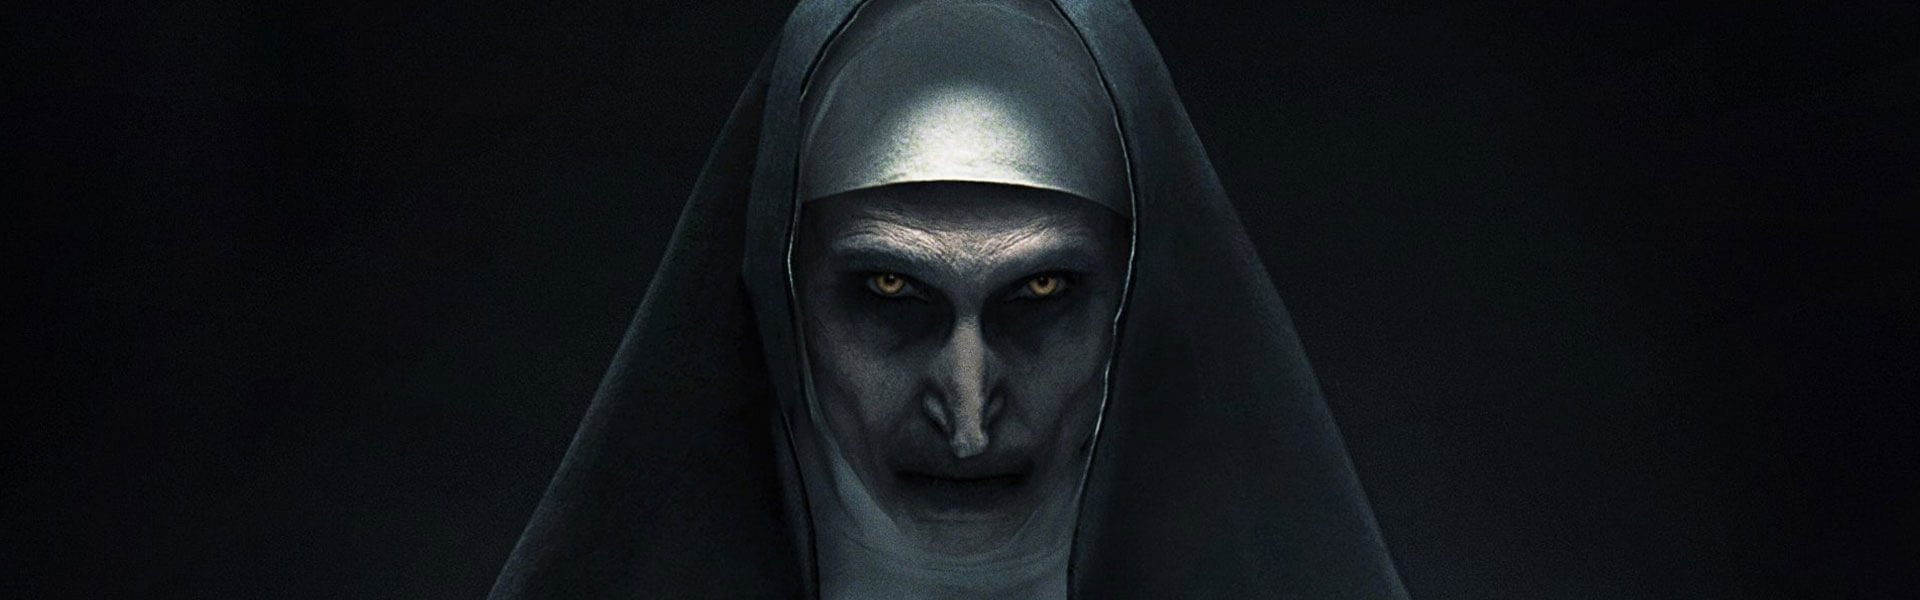 Crítica: ‘La monja 2’ logra ser peor que la película anterior